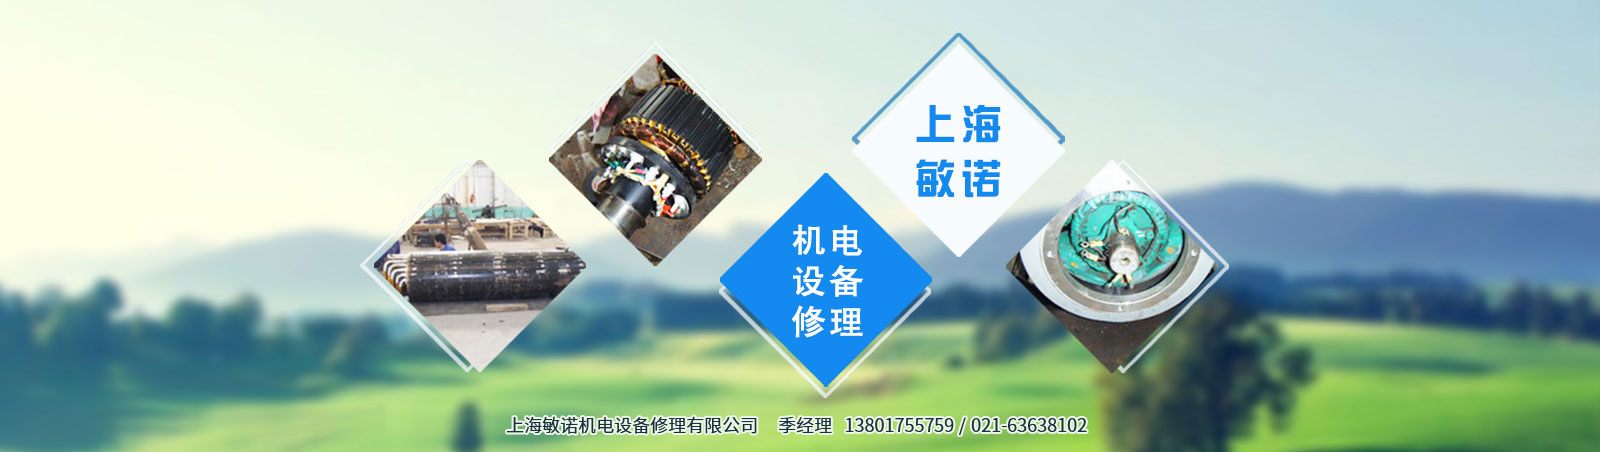 上海敏诺机电设备修理有限公司